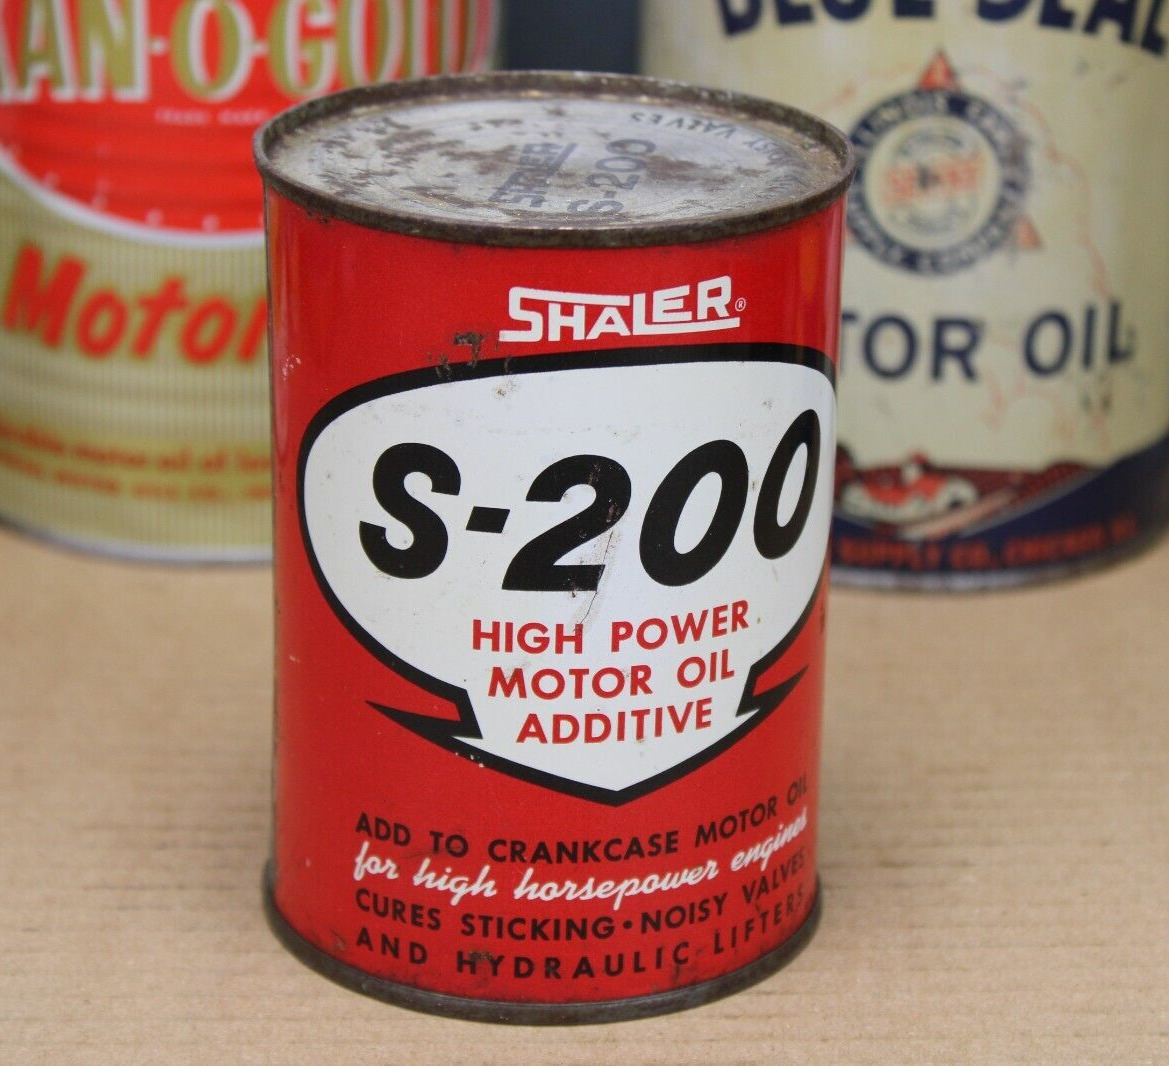 FULL NO LEAKS~ 1950s era SHALER S-200 MOTOR OIL Old Soldered Seam Tin Oil Can